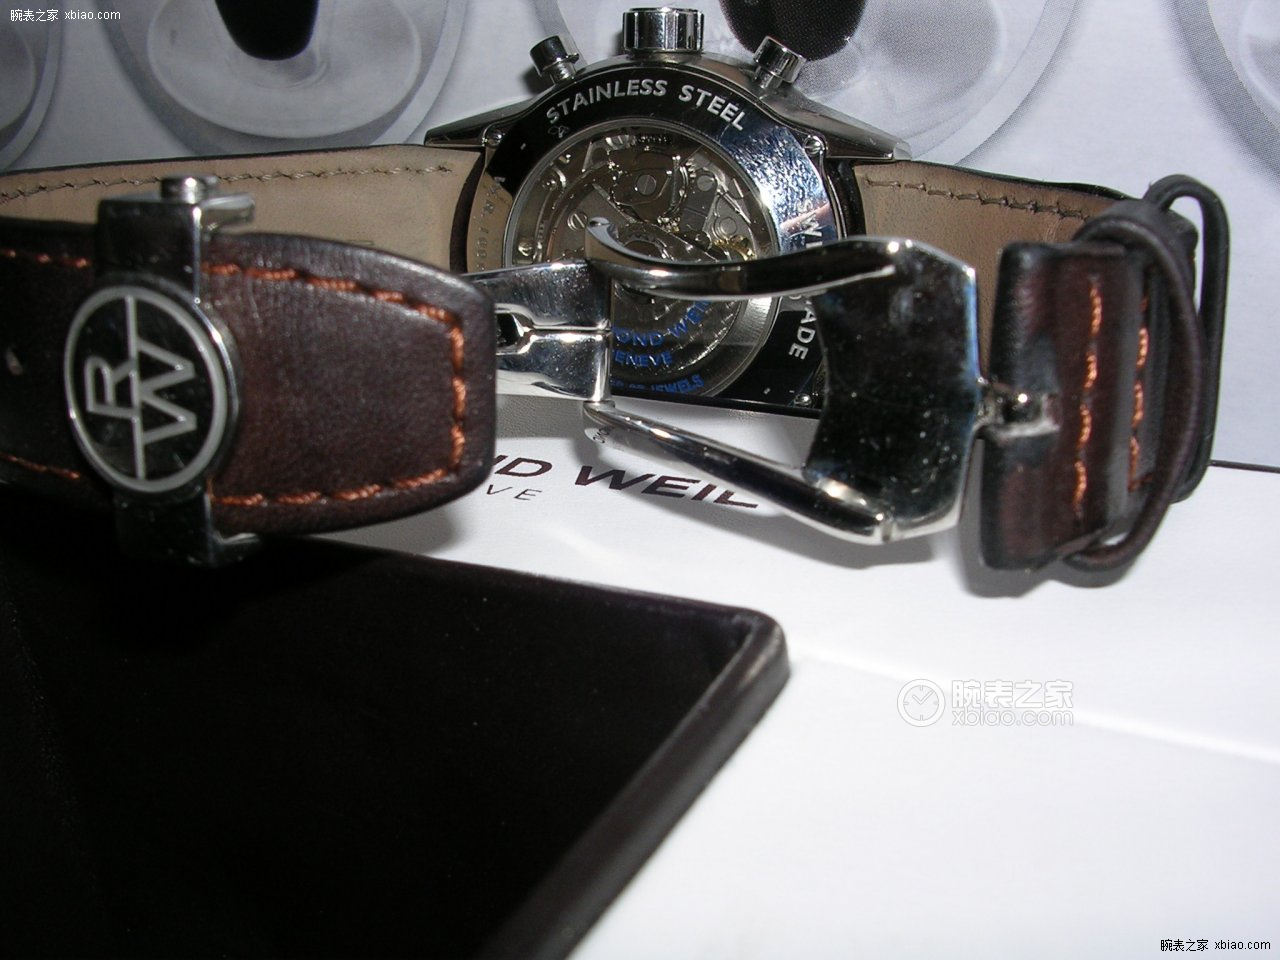 蕾蒙威男装腕表系列7730-STC-20101